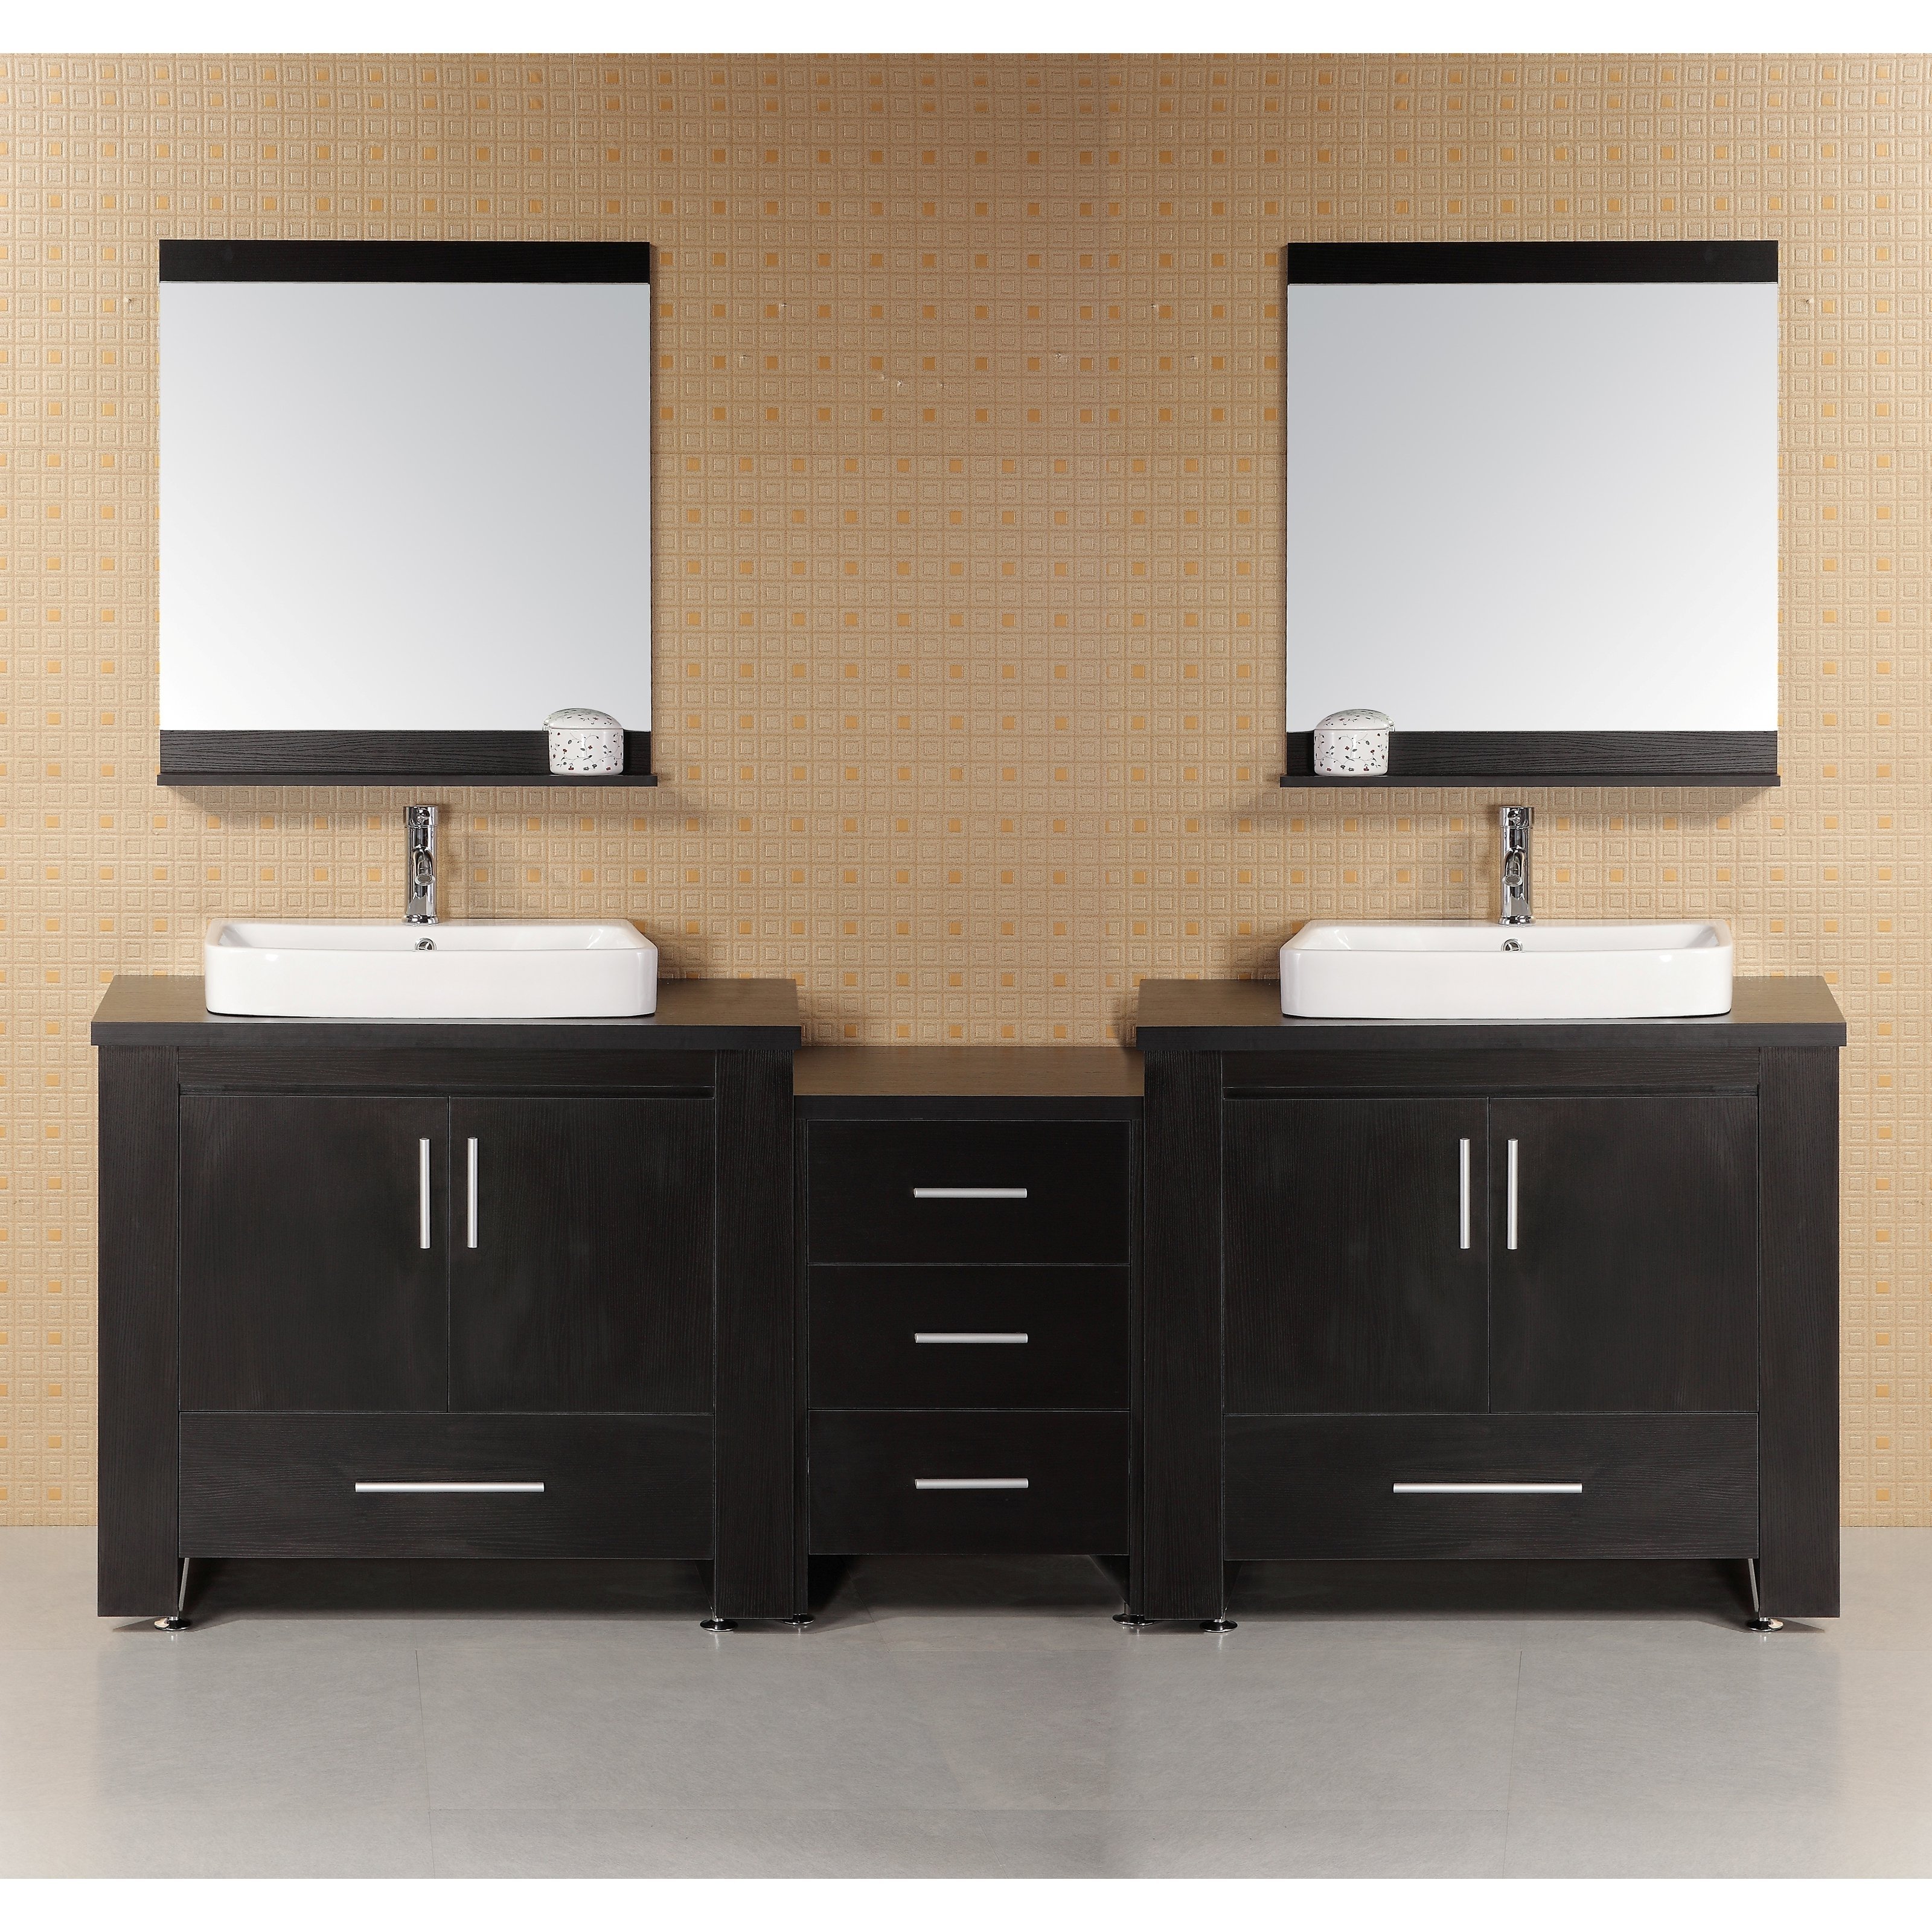 10 Fashionable Double Sink Bathroom Vanity Ideas best solutions of bathroom vanities bathroom sink double vanity 2022